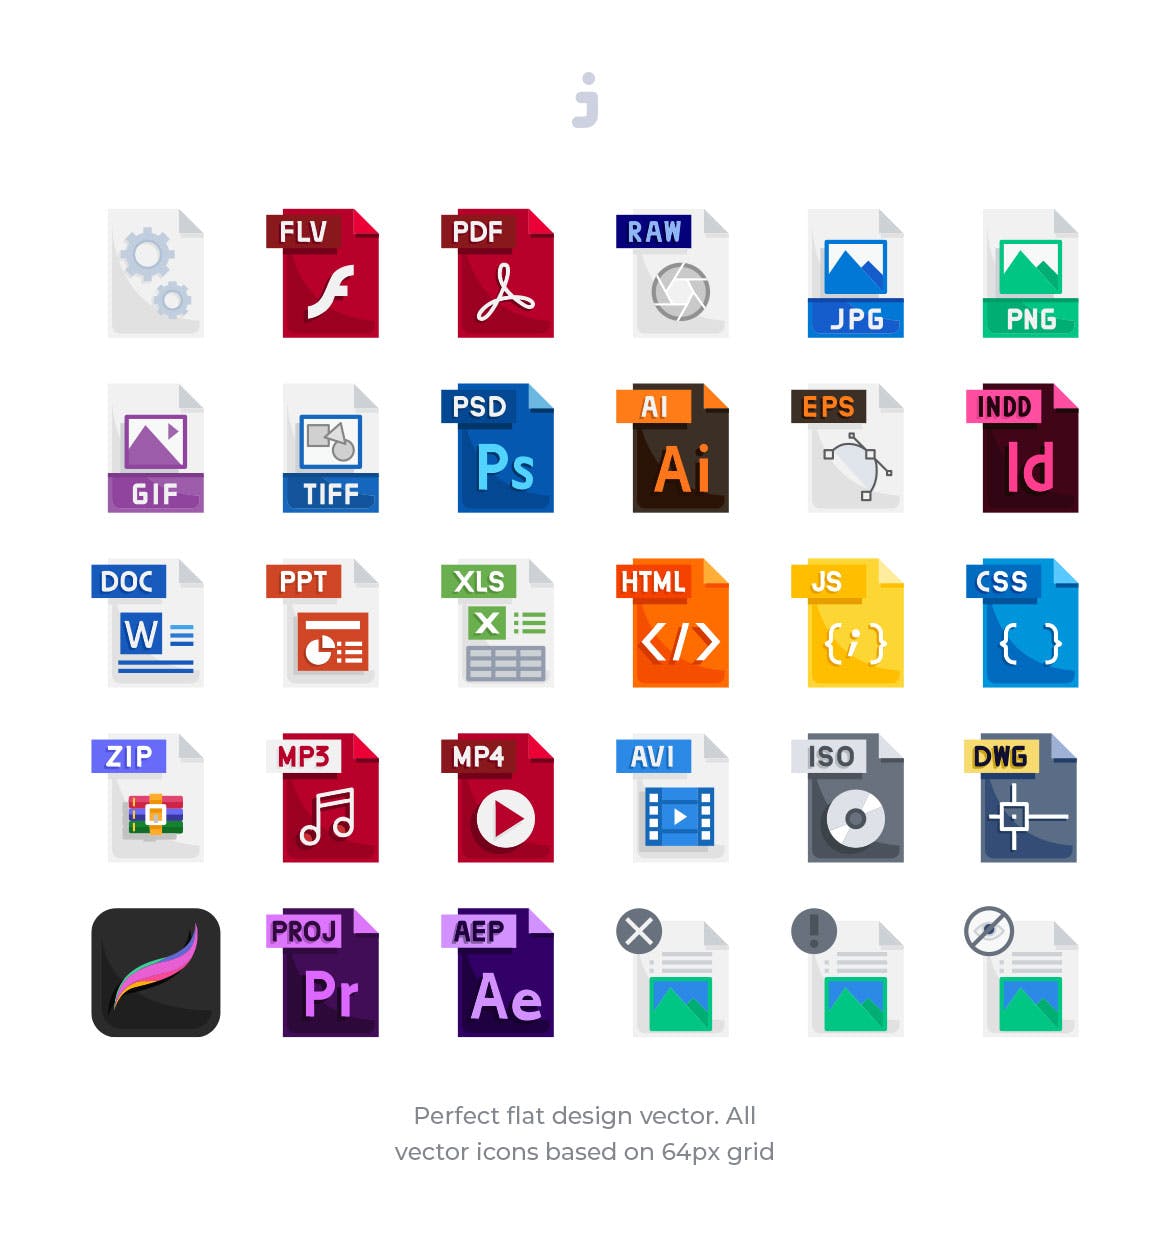 30种文件格式扁平设计风格蚂蚁素材精选图标 30 File Types Icons – Flat插图(1)